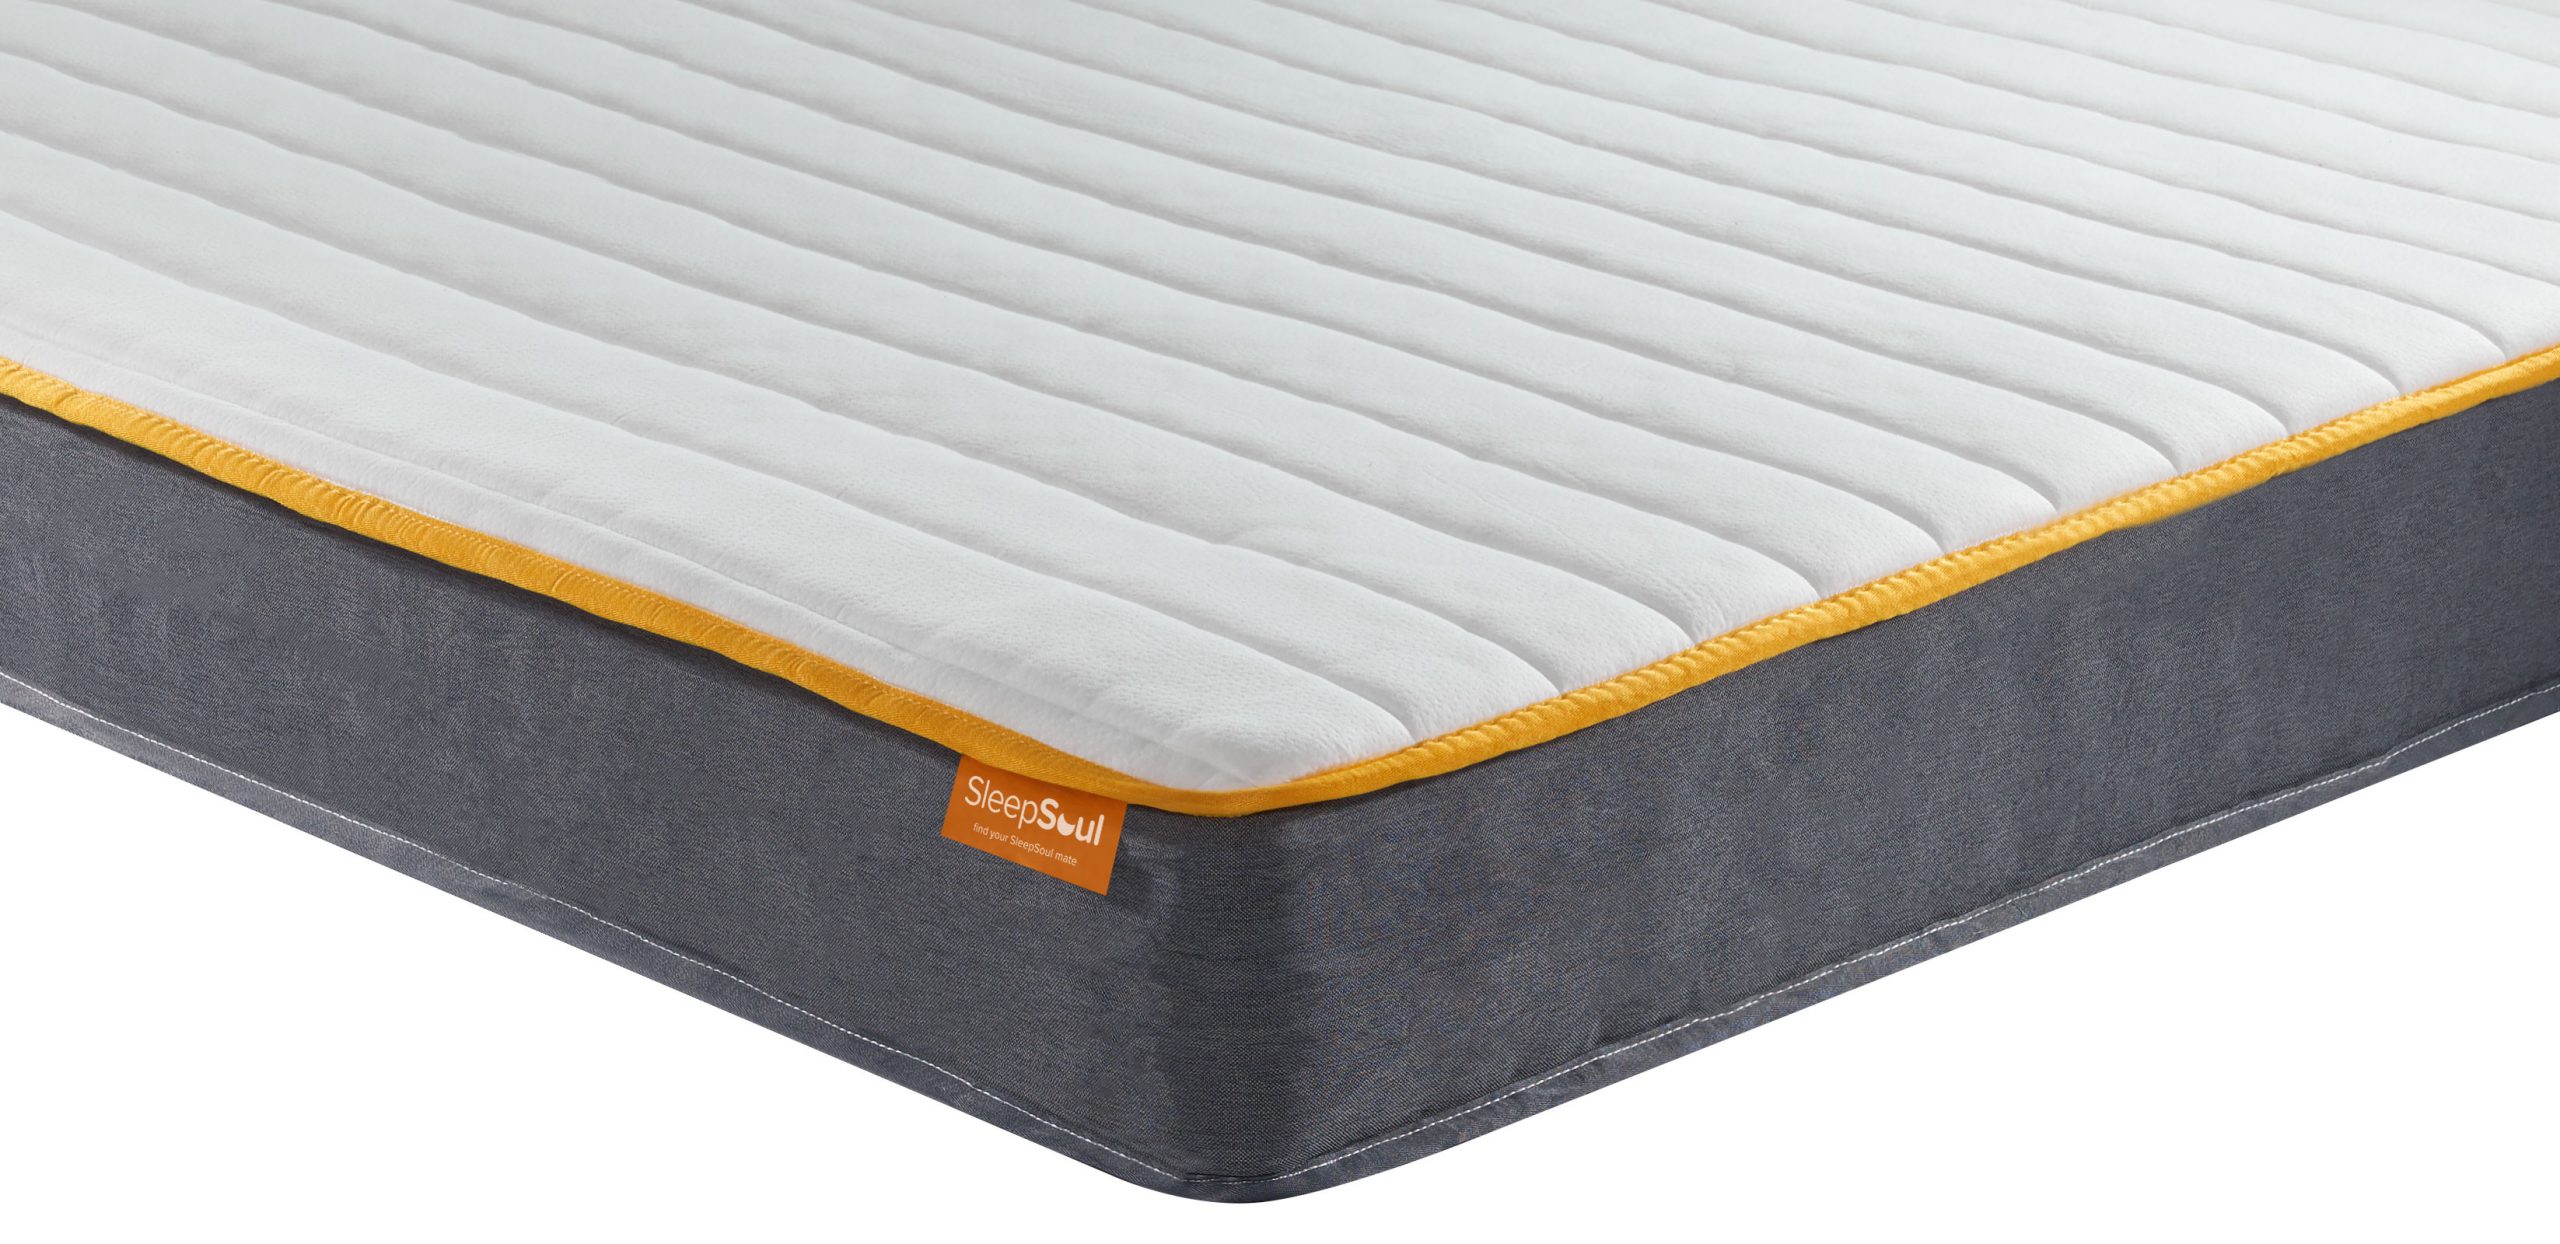 sleepfresh perfect balance mattress size carrycot